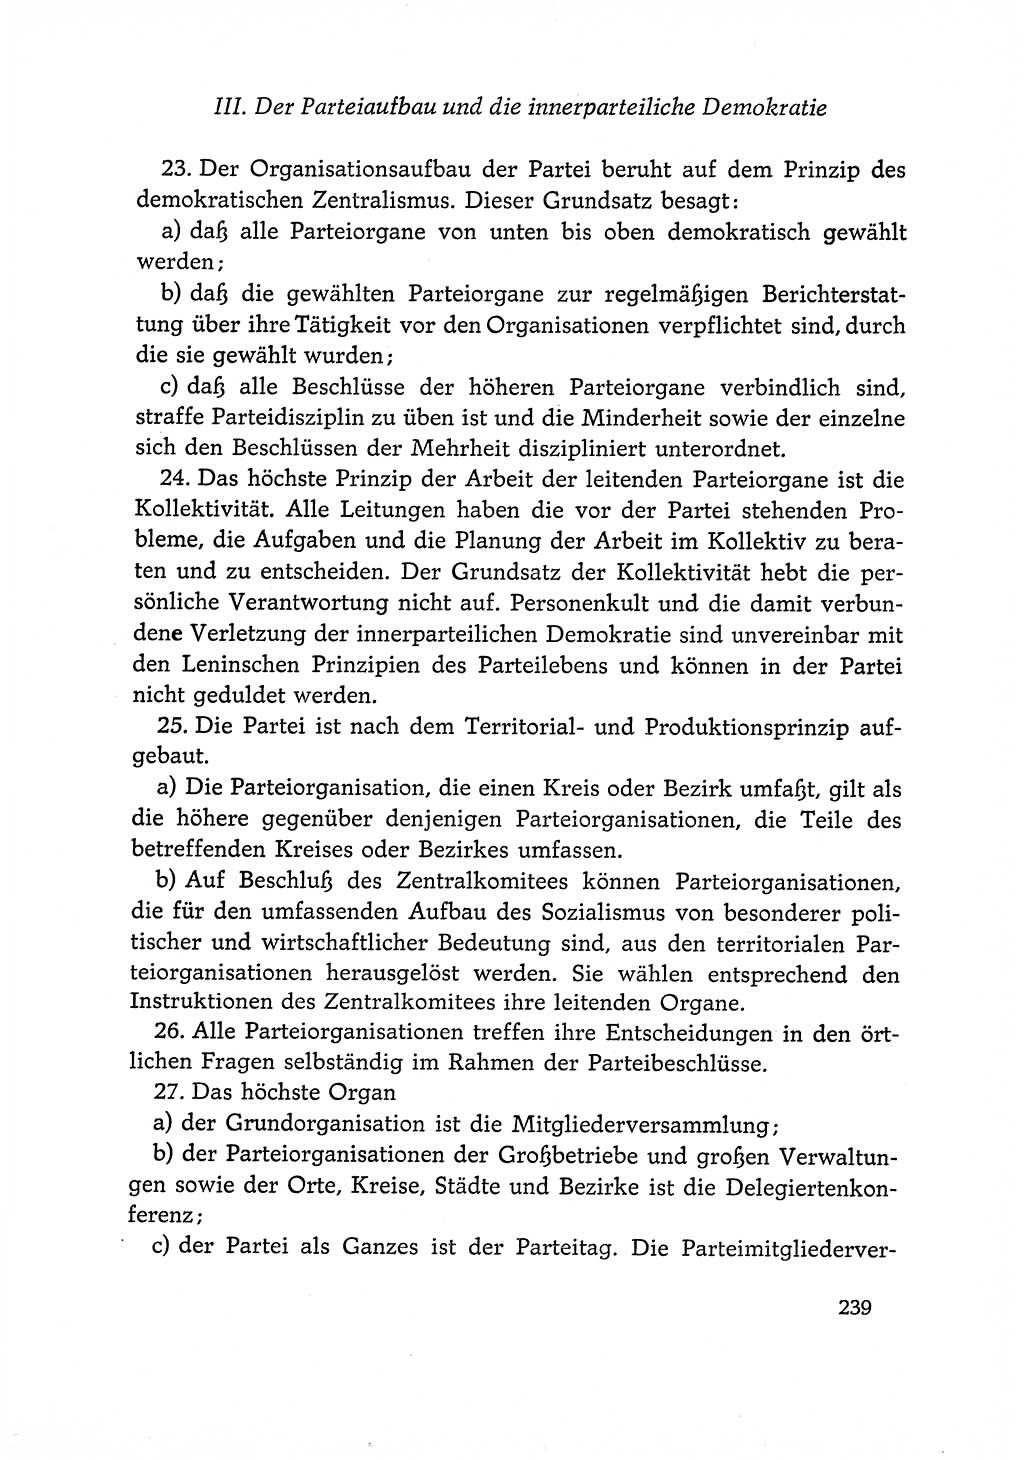 Dokumente der Sozialistischen Einheitspartei Deutschlands (SED) [Deutsche Demokratische Republik (DDR)] 1966-1967, Seite 239 (Dok. SED DDR 1966-1967, S. 239)